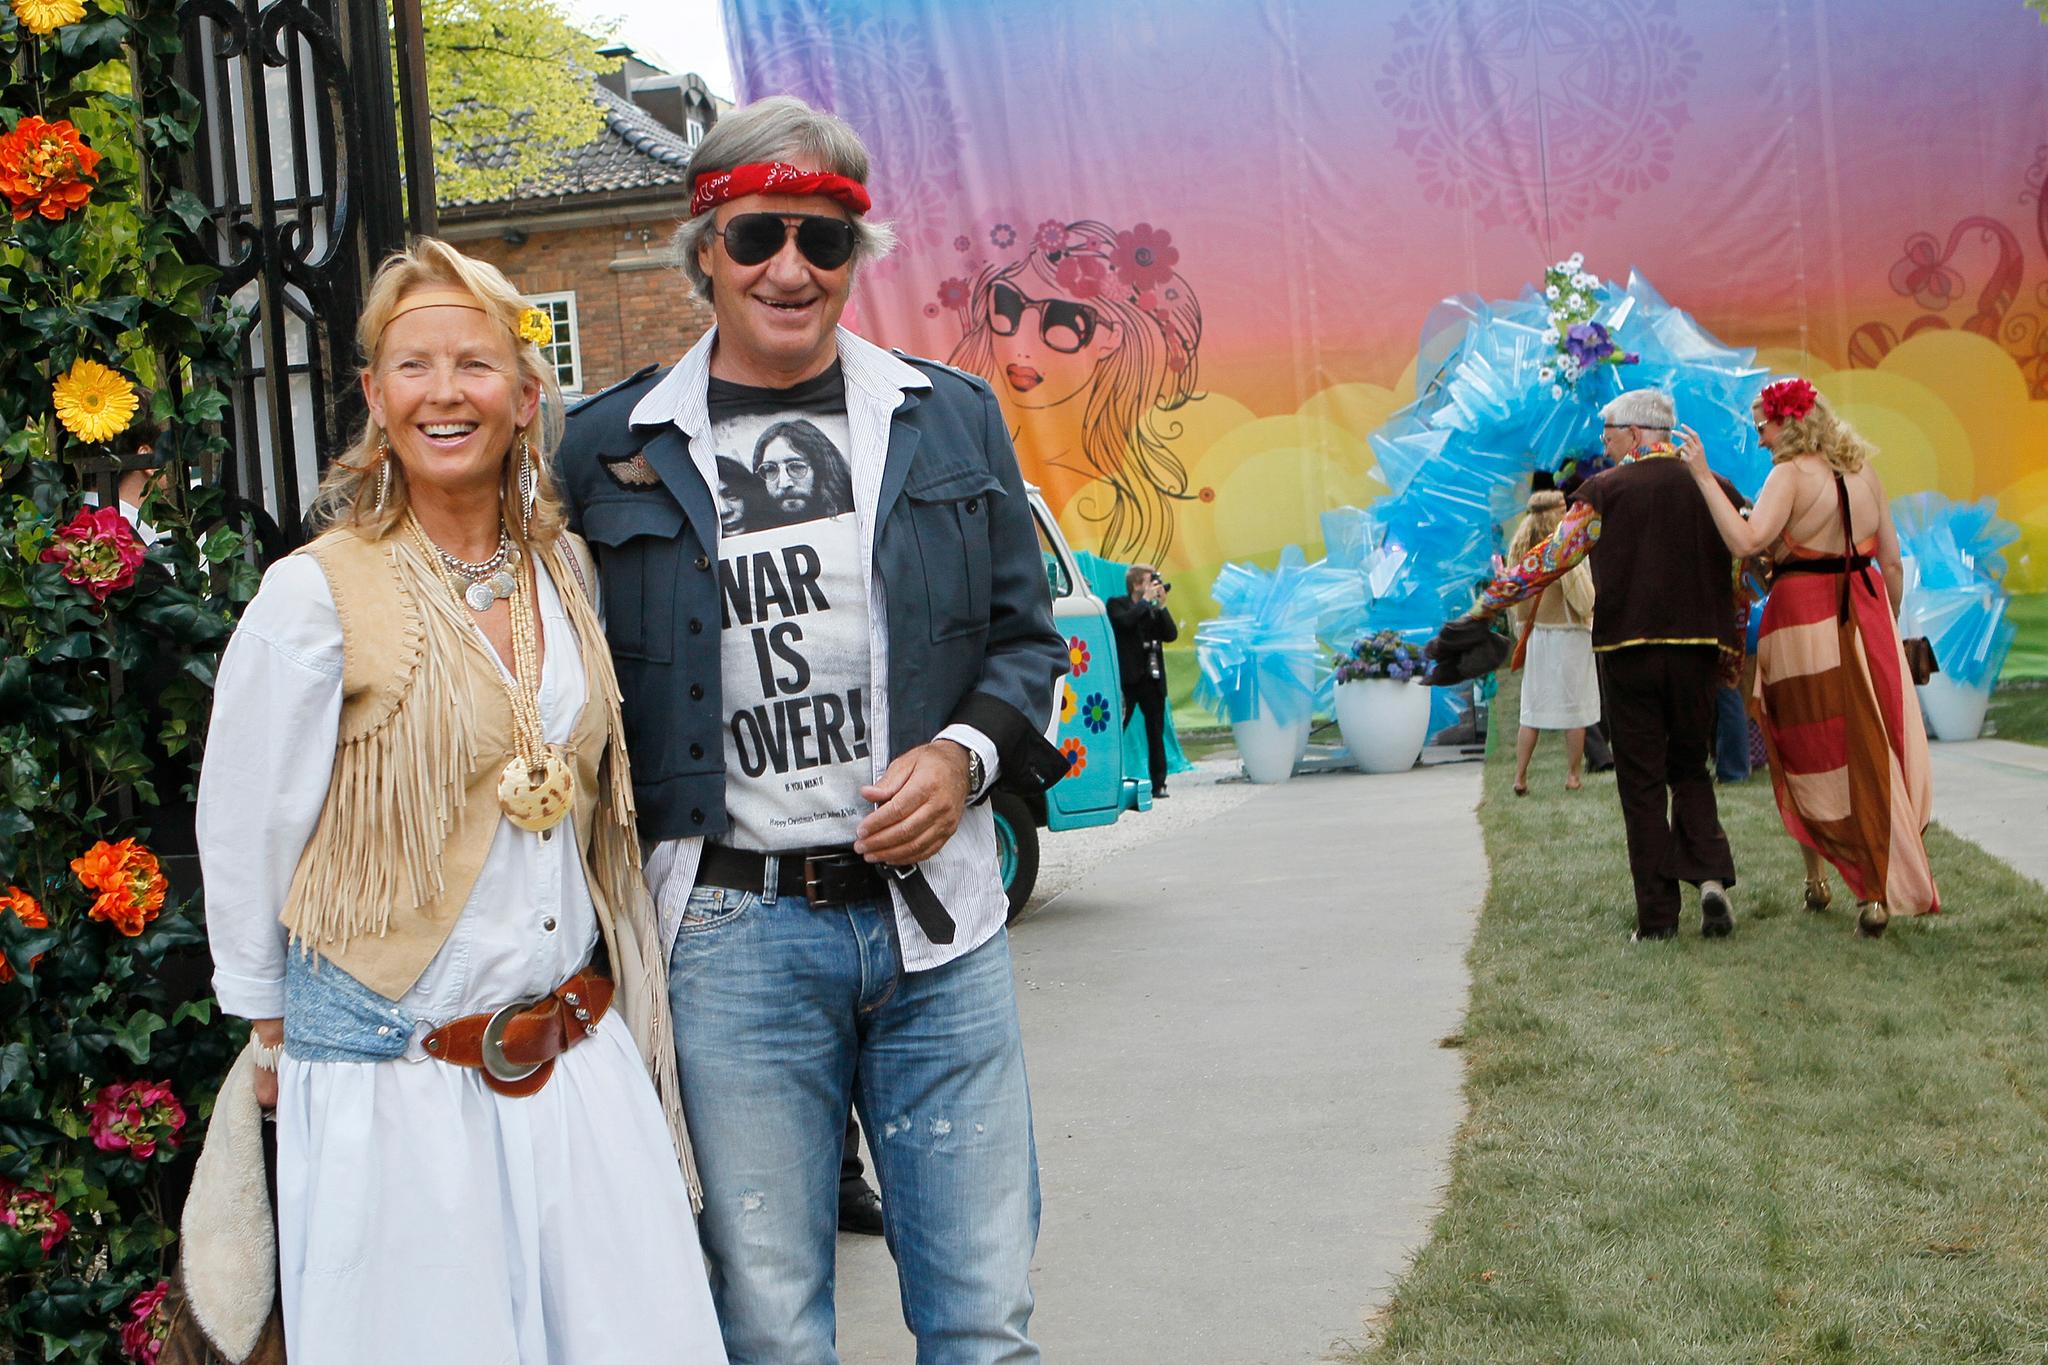 Året før, i 2011, hadde festen hippie-tema. Her er Bjørn Kjos og kona Gerd Helene Kjos. Trygve Hegnar og samboer Vibeke Holth i bakgrunnen.